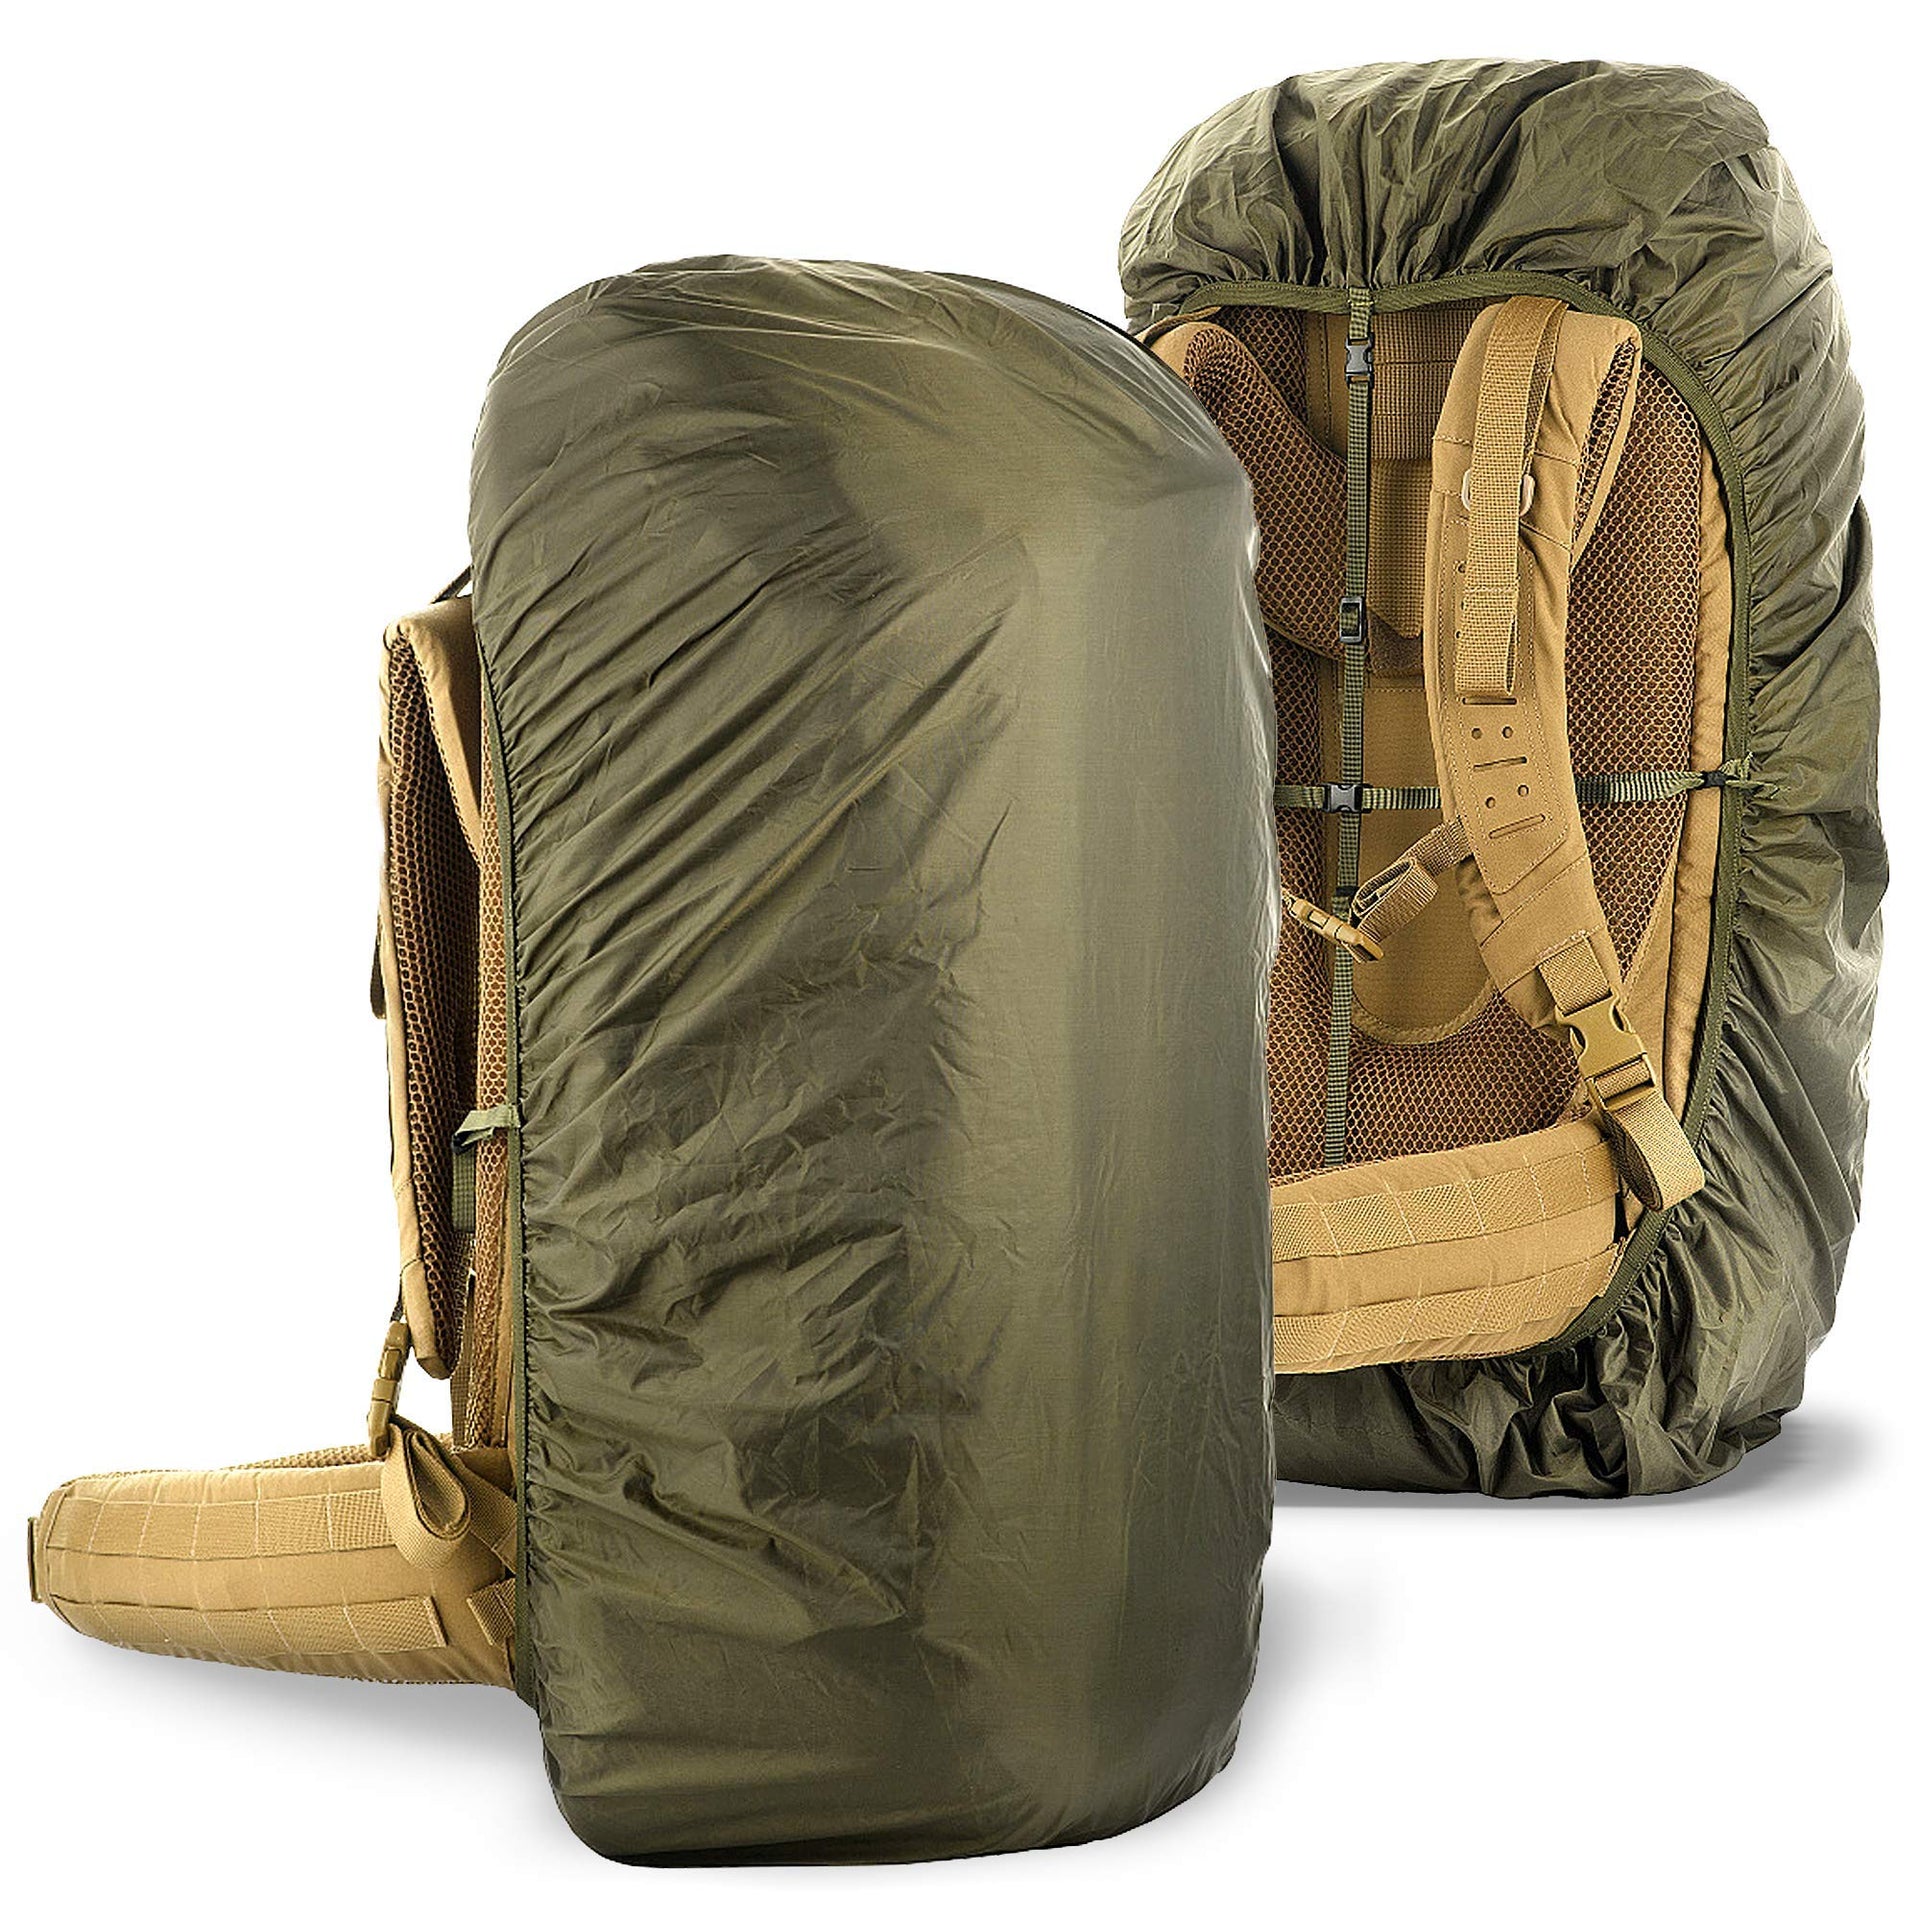 Backpack Rain Covers Bag